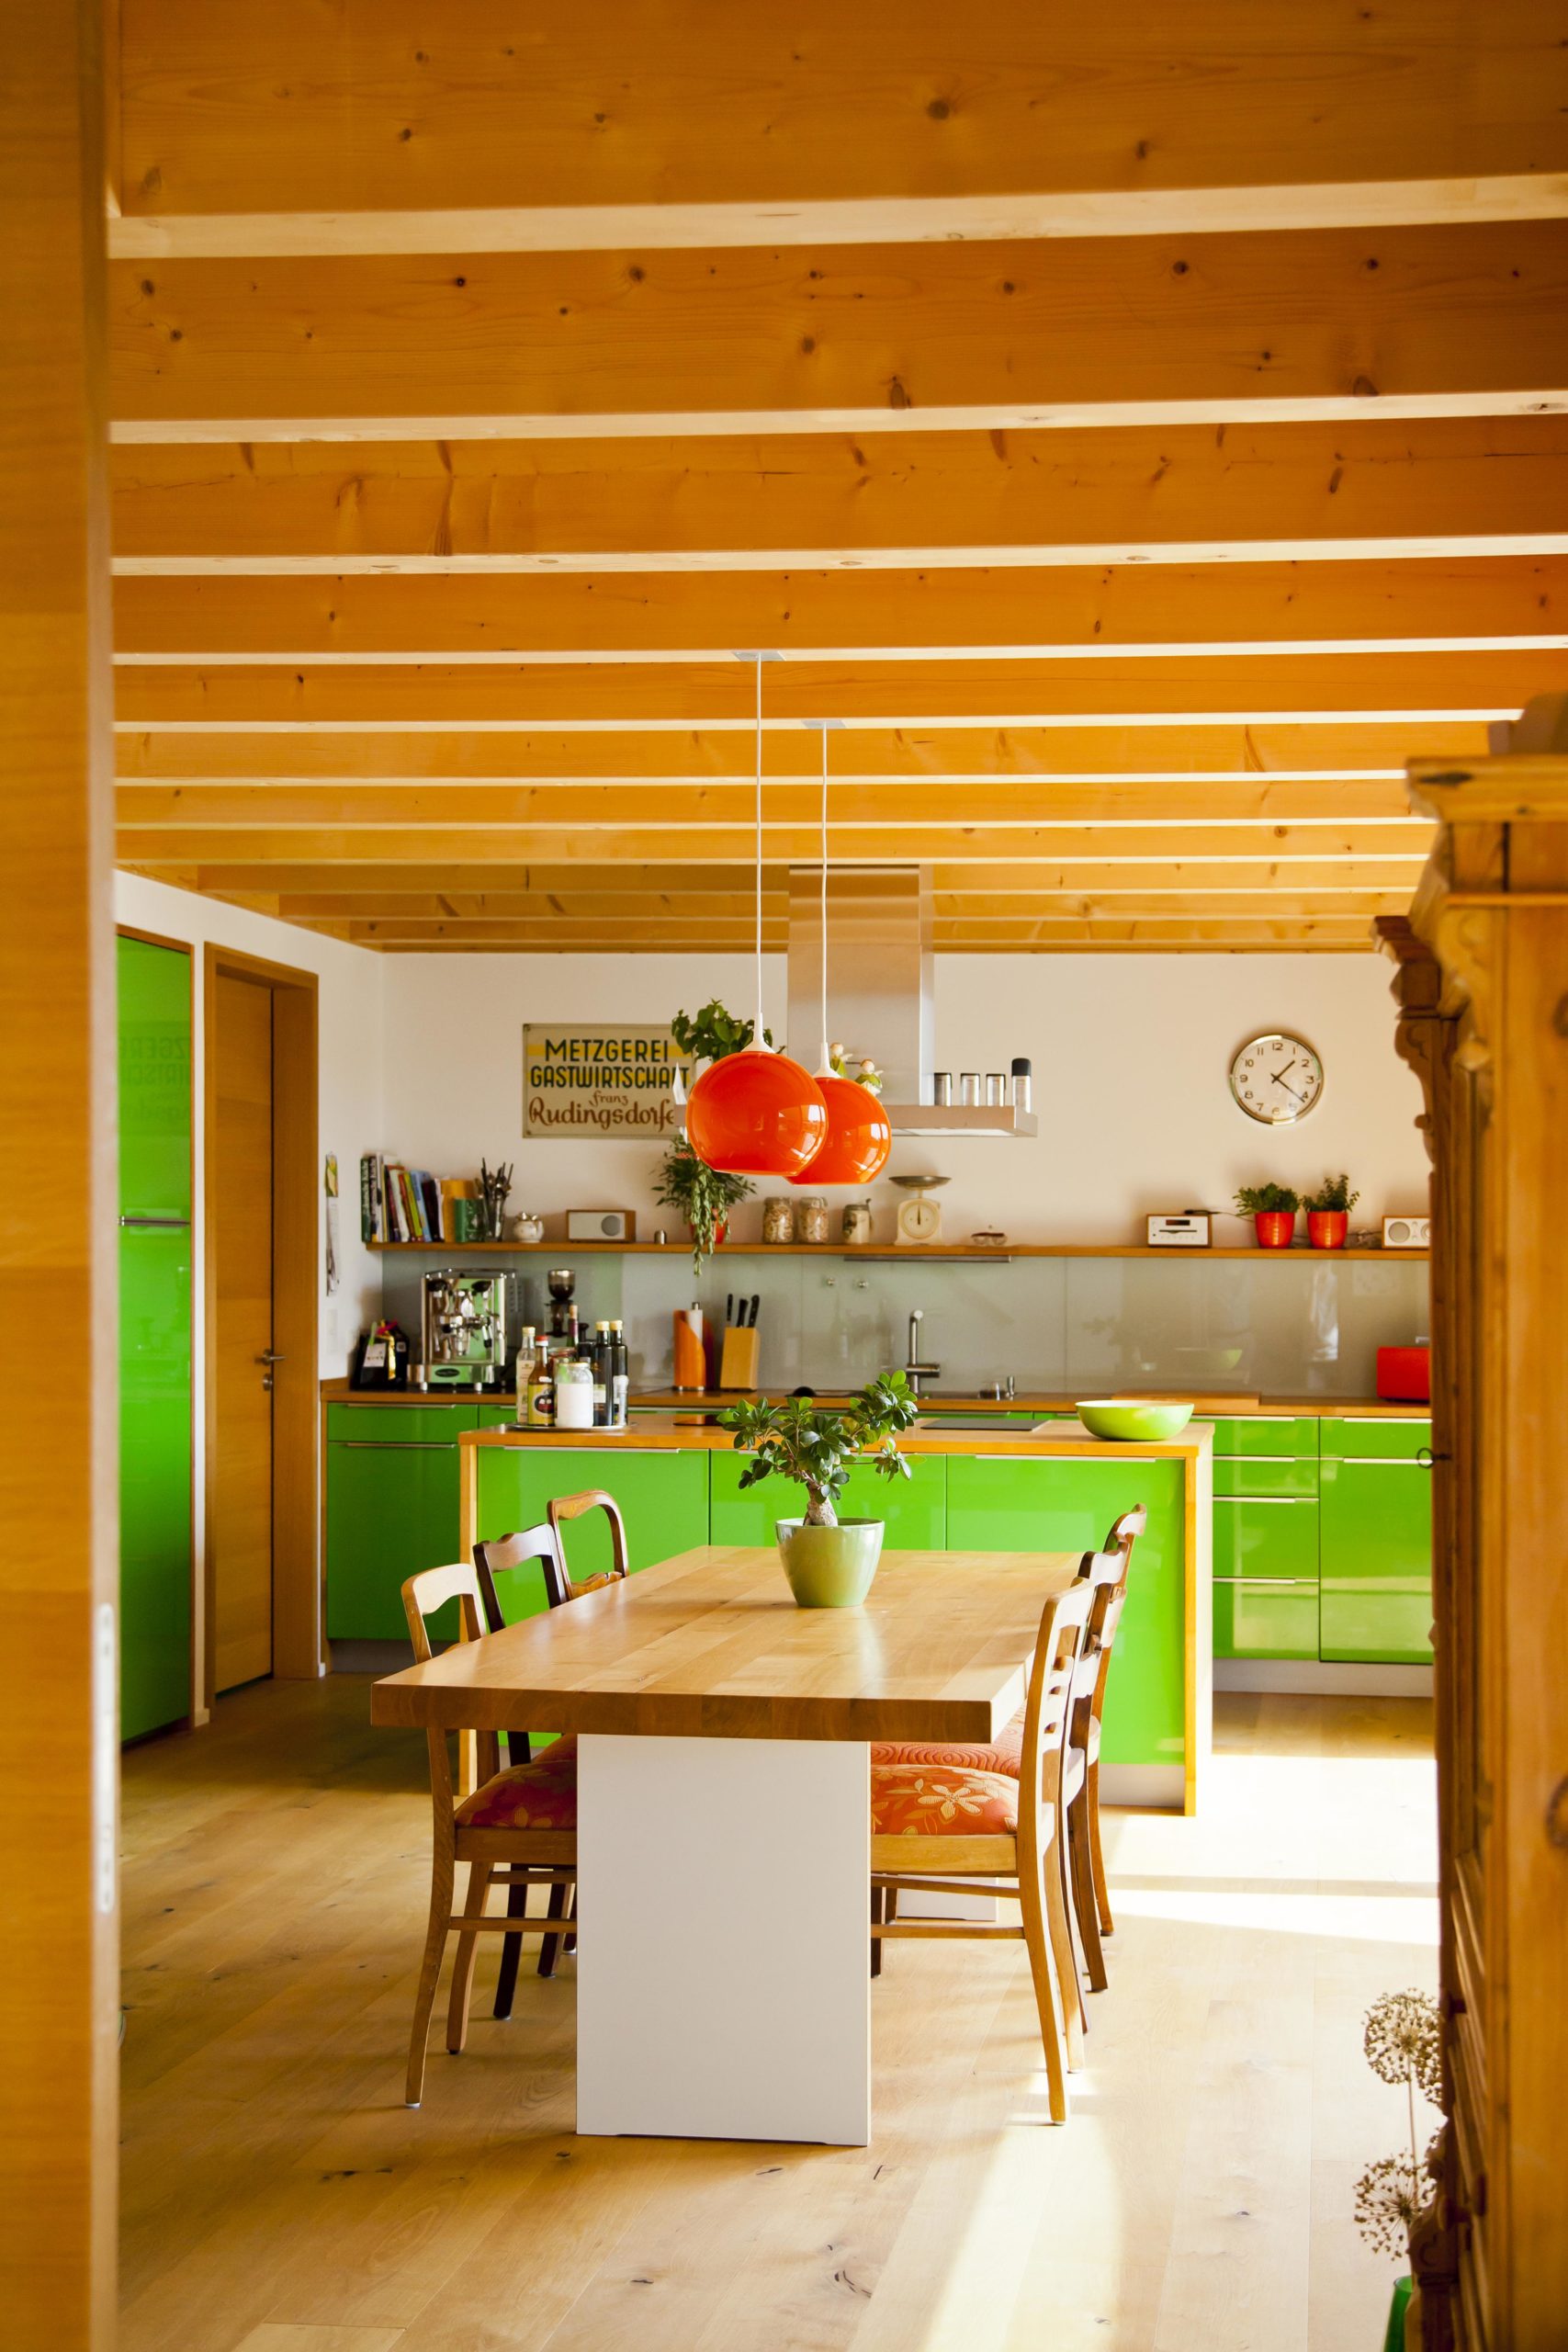 Sichtbalkendecke in der Küche des Holzhauses